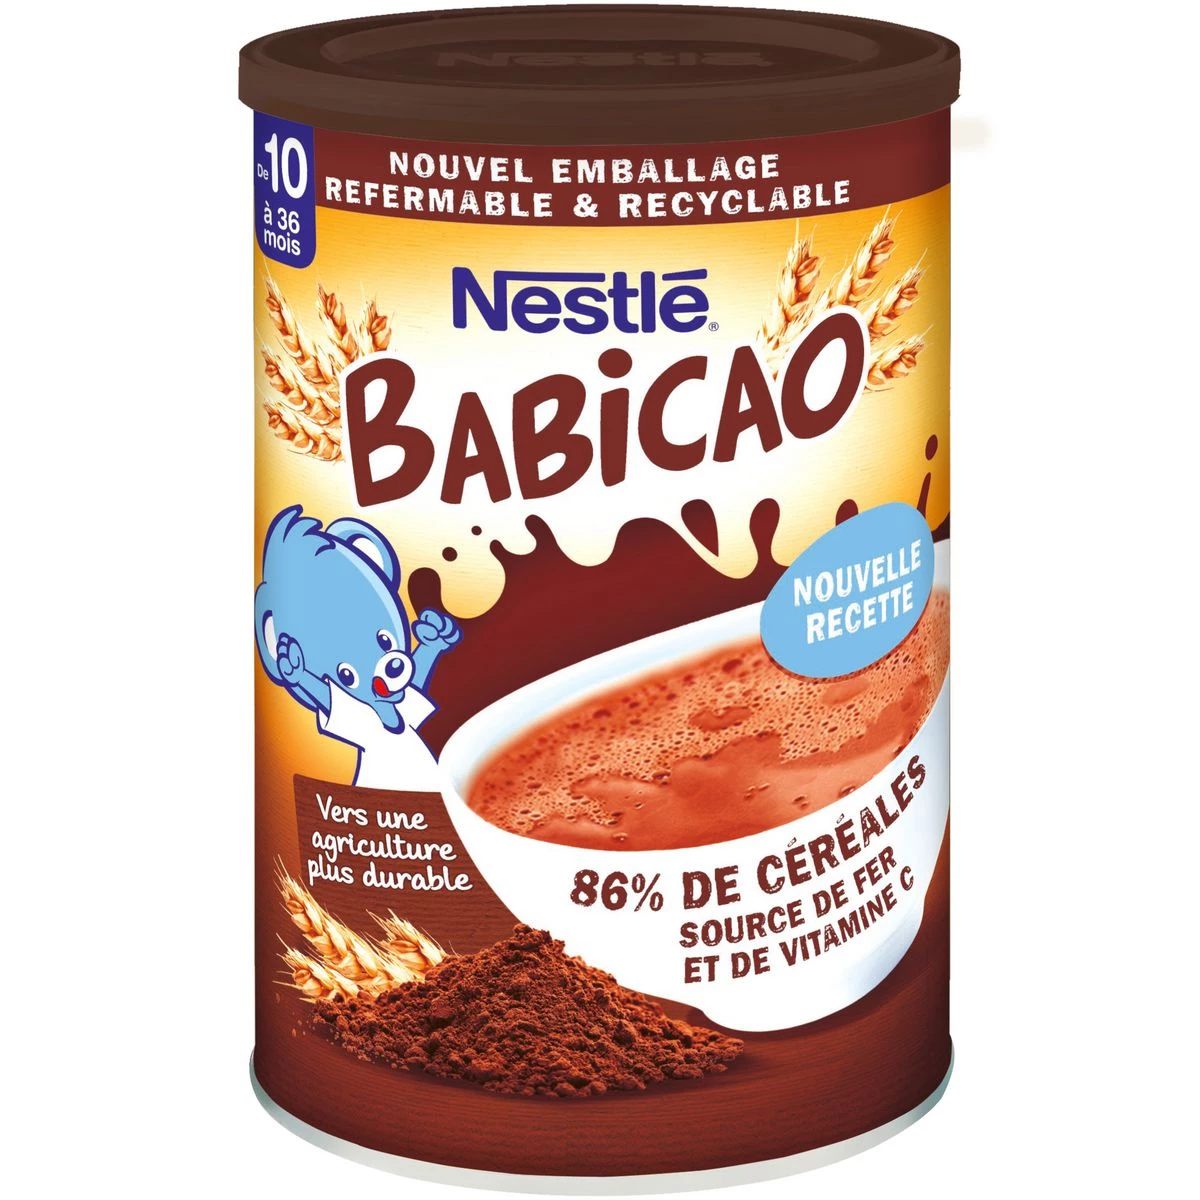 Babicao babychocoladepoeder 400g - NESTLE